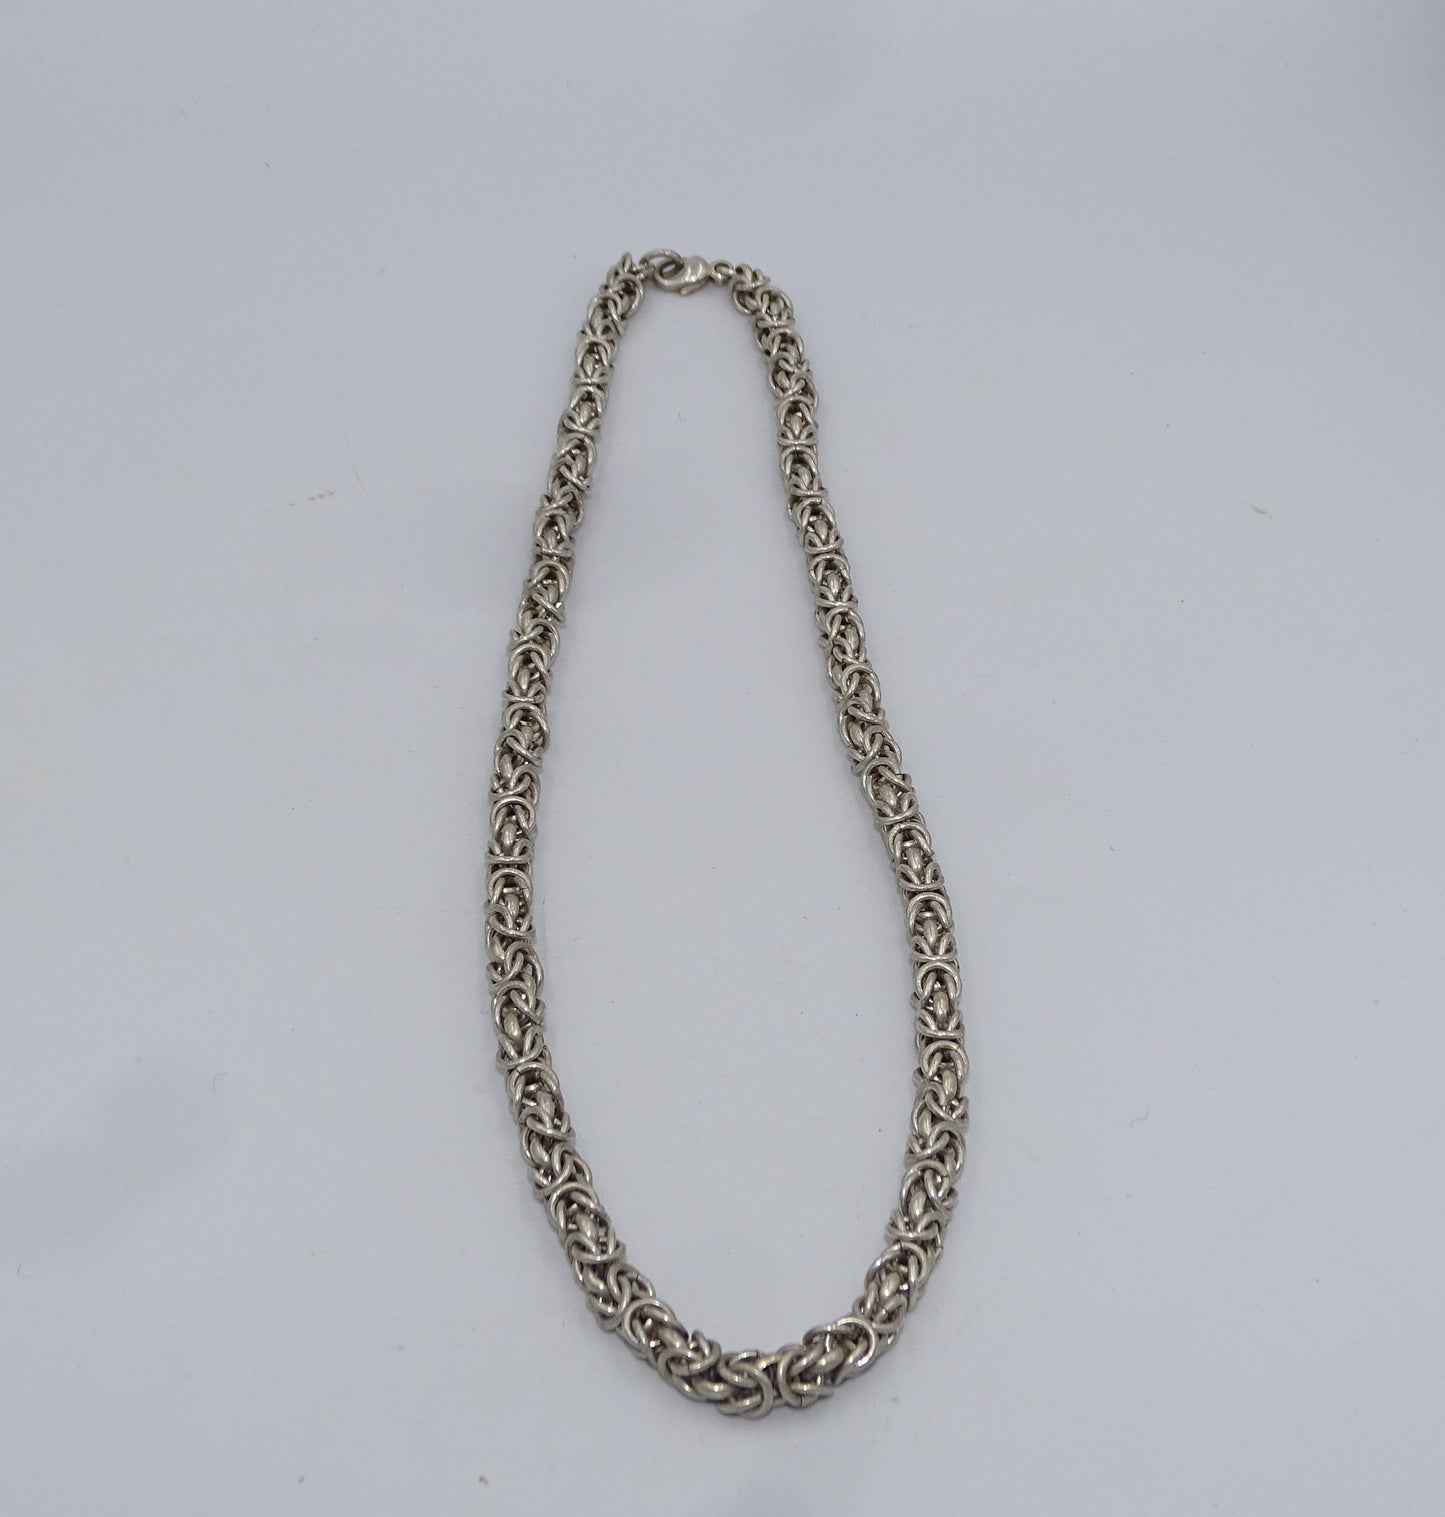 Königskette Silber 925 - 50 cm Länge